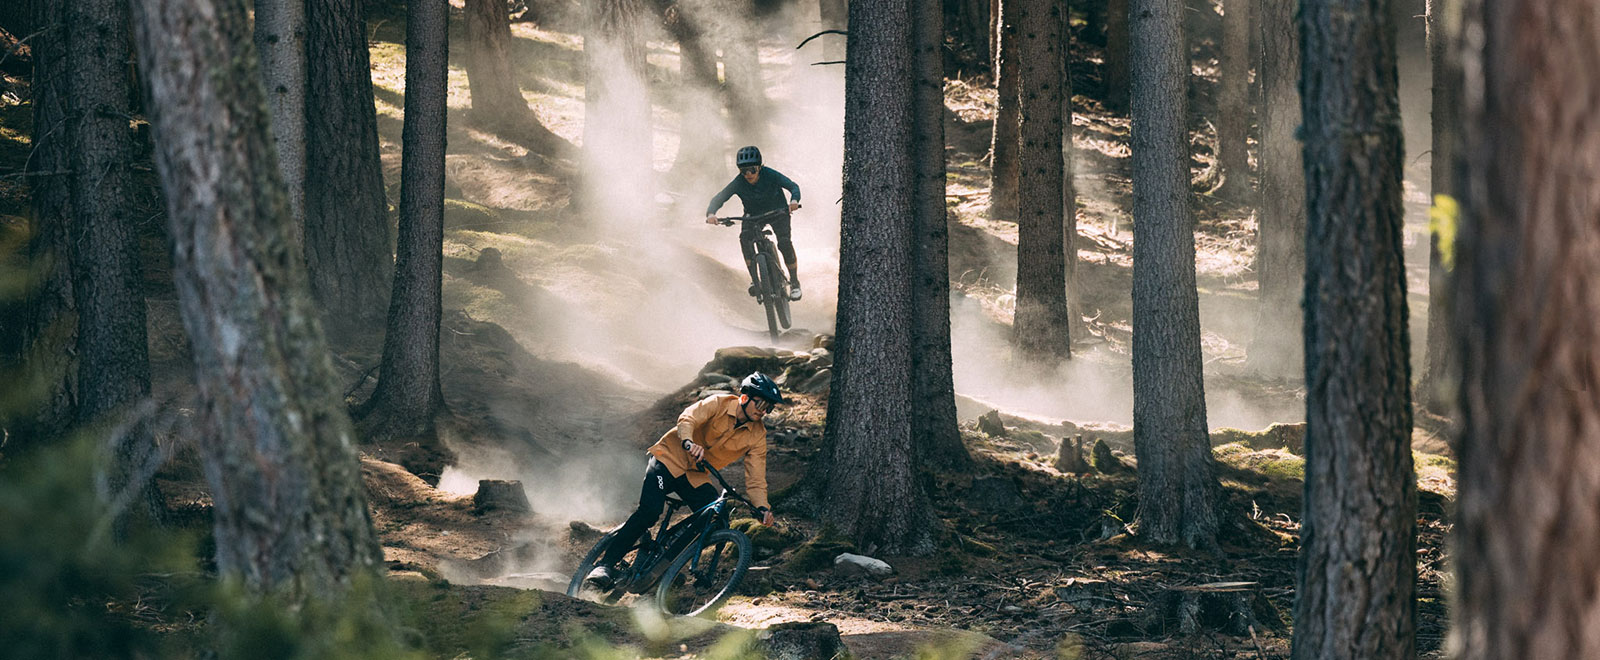 Zwei Biker fahren mit Trek Fuel EXe E-Bike auf Trail im Wald